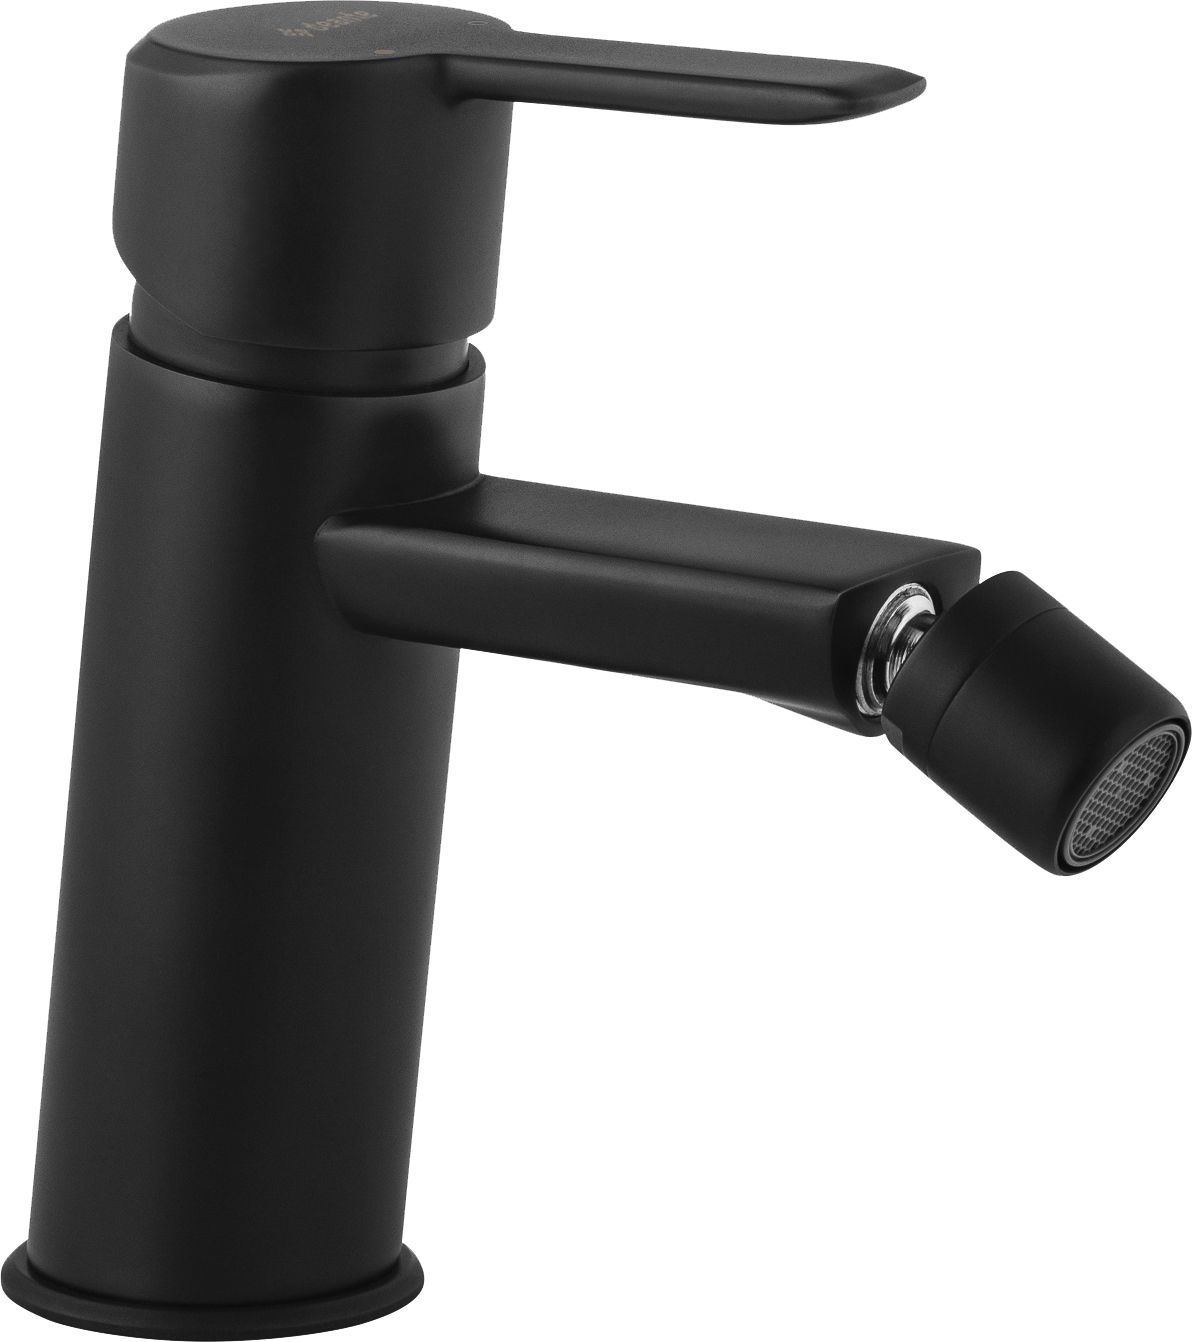 Bidet tap - BQA_N30M - Główne zdjęcie produktowe